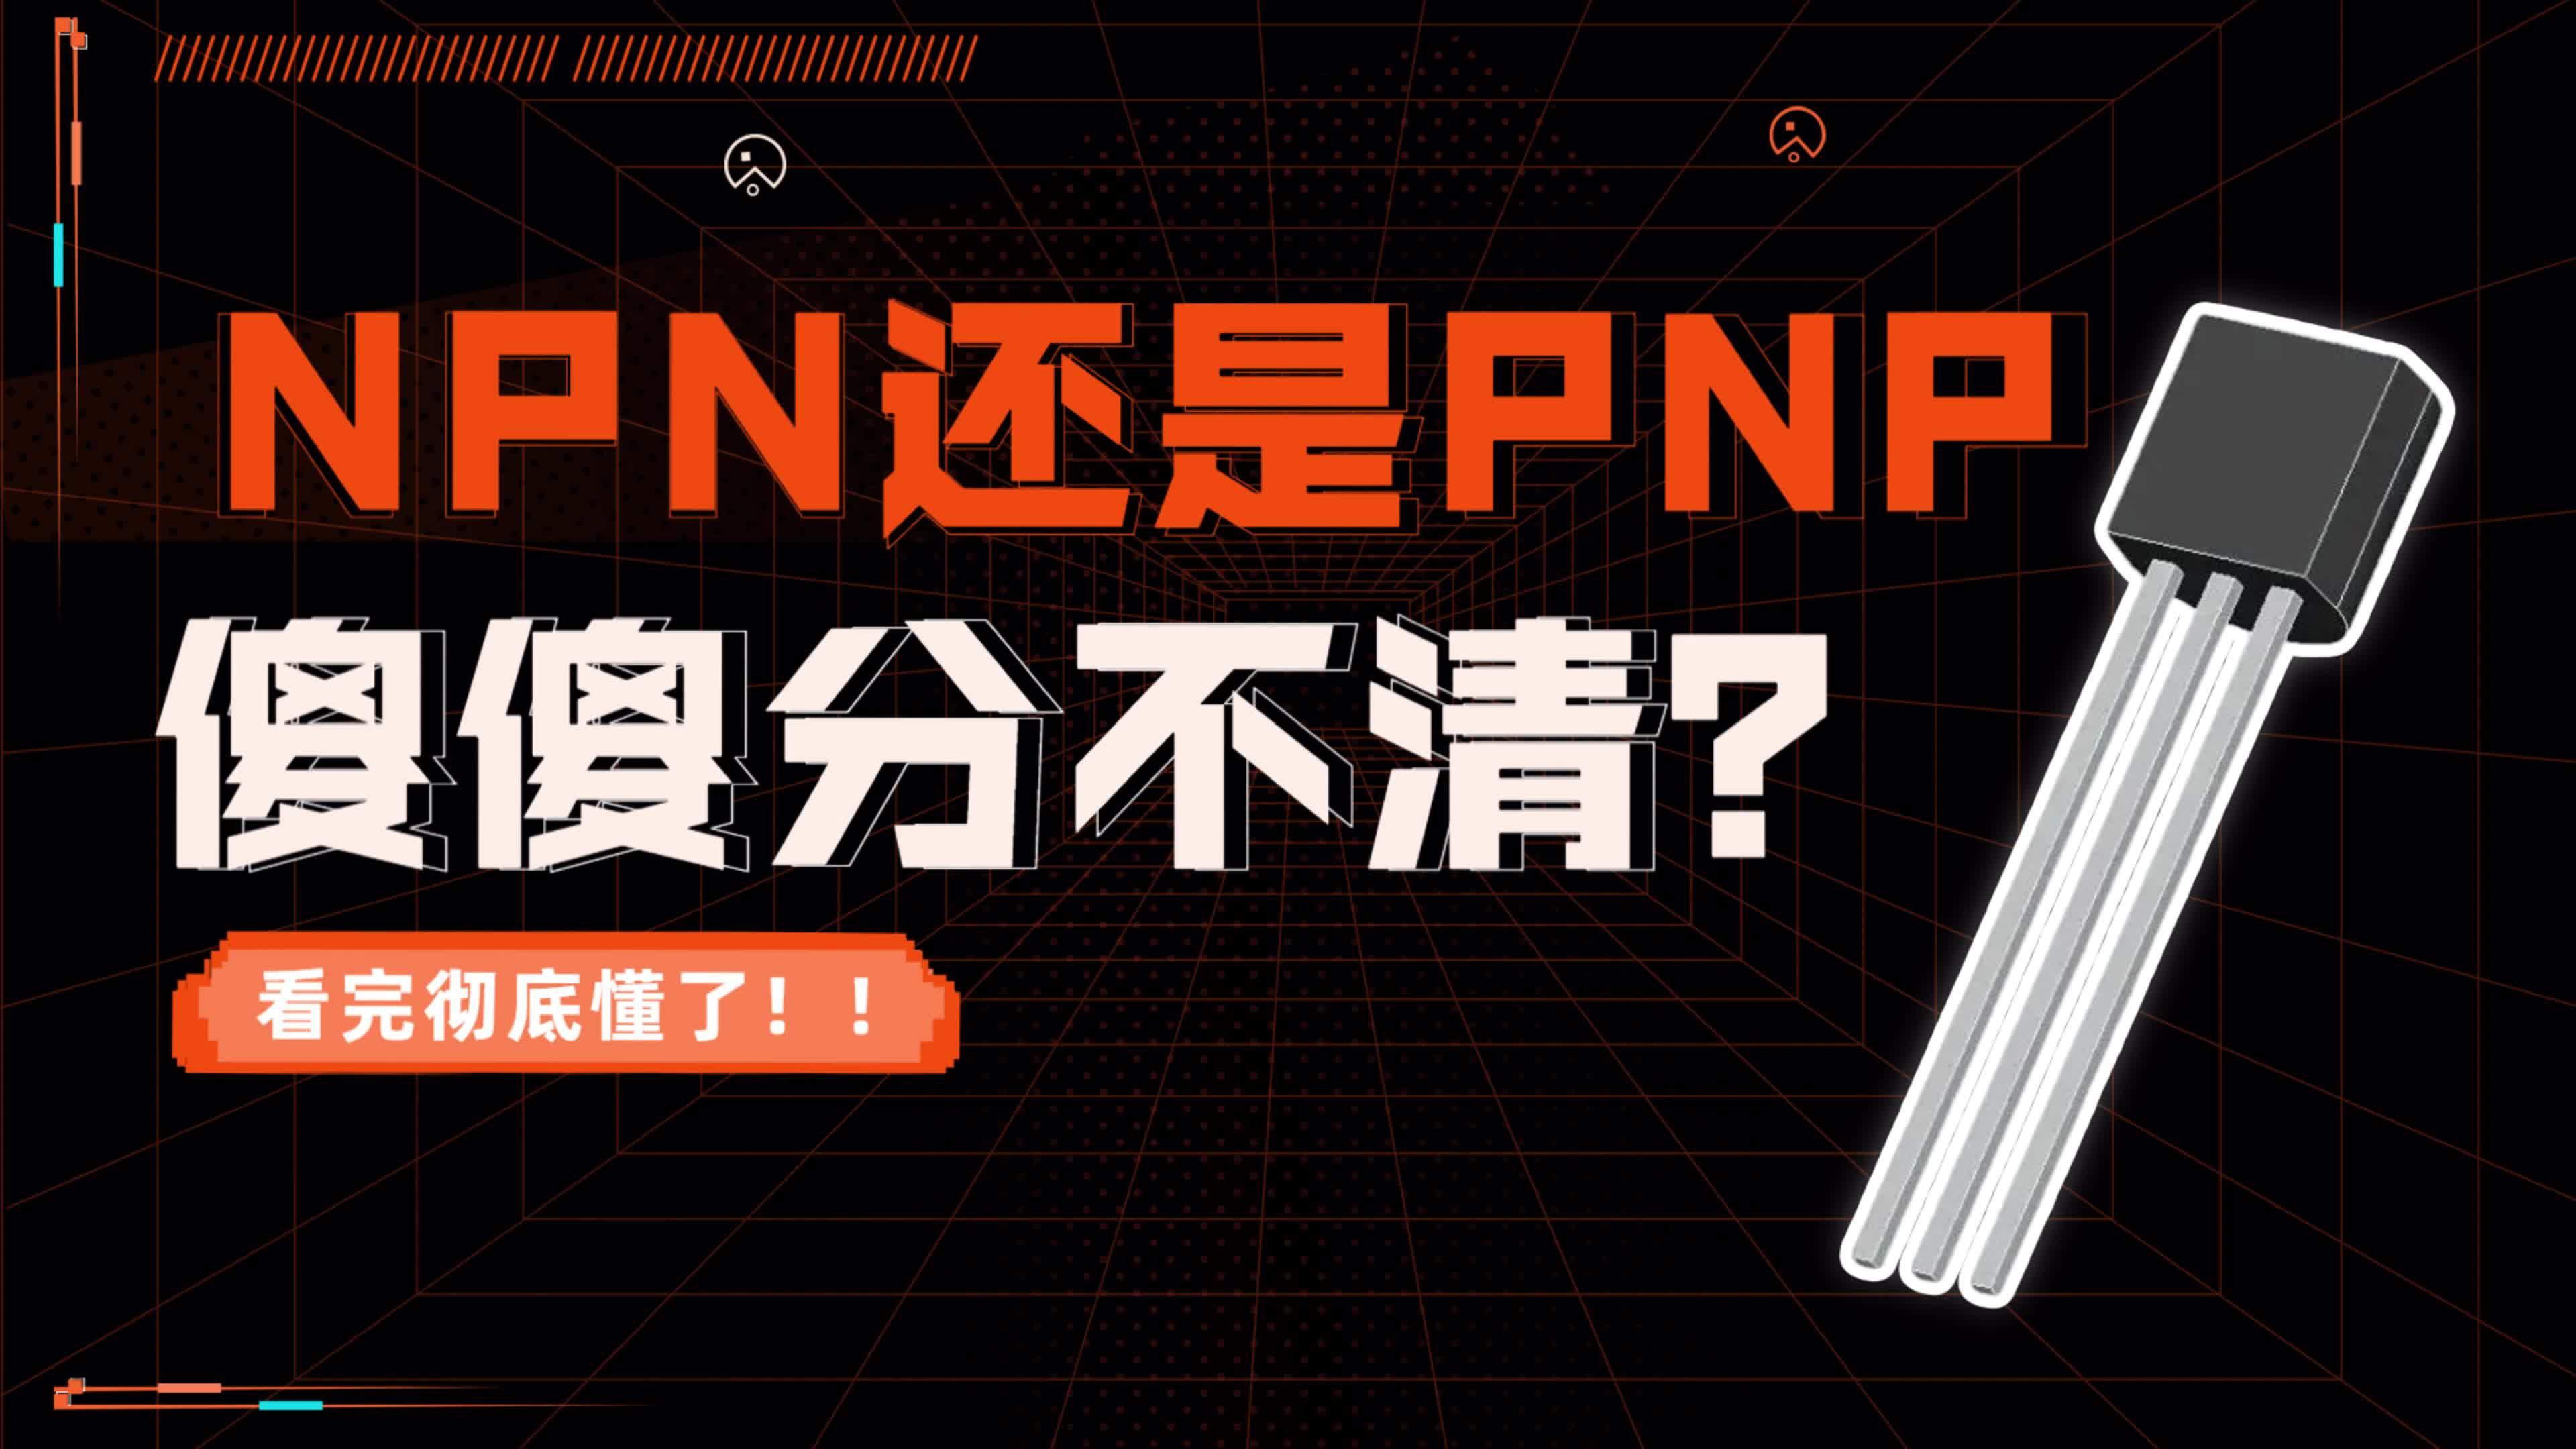 还是分不清NPN还是PNP 答应我看完你就彻底懂了#电工知识 #芯片制造 #电子元器件 